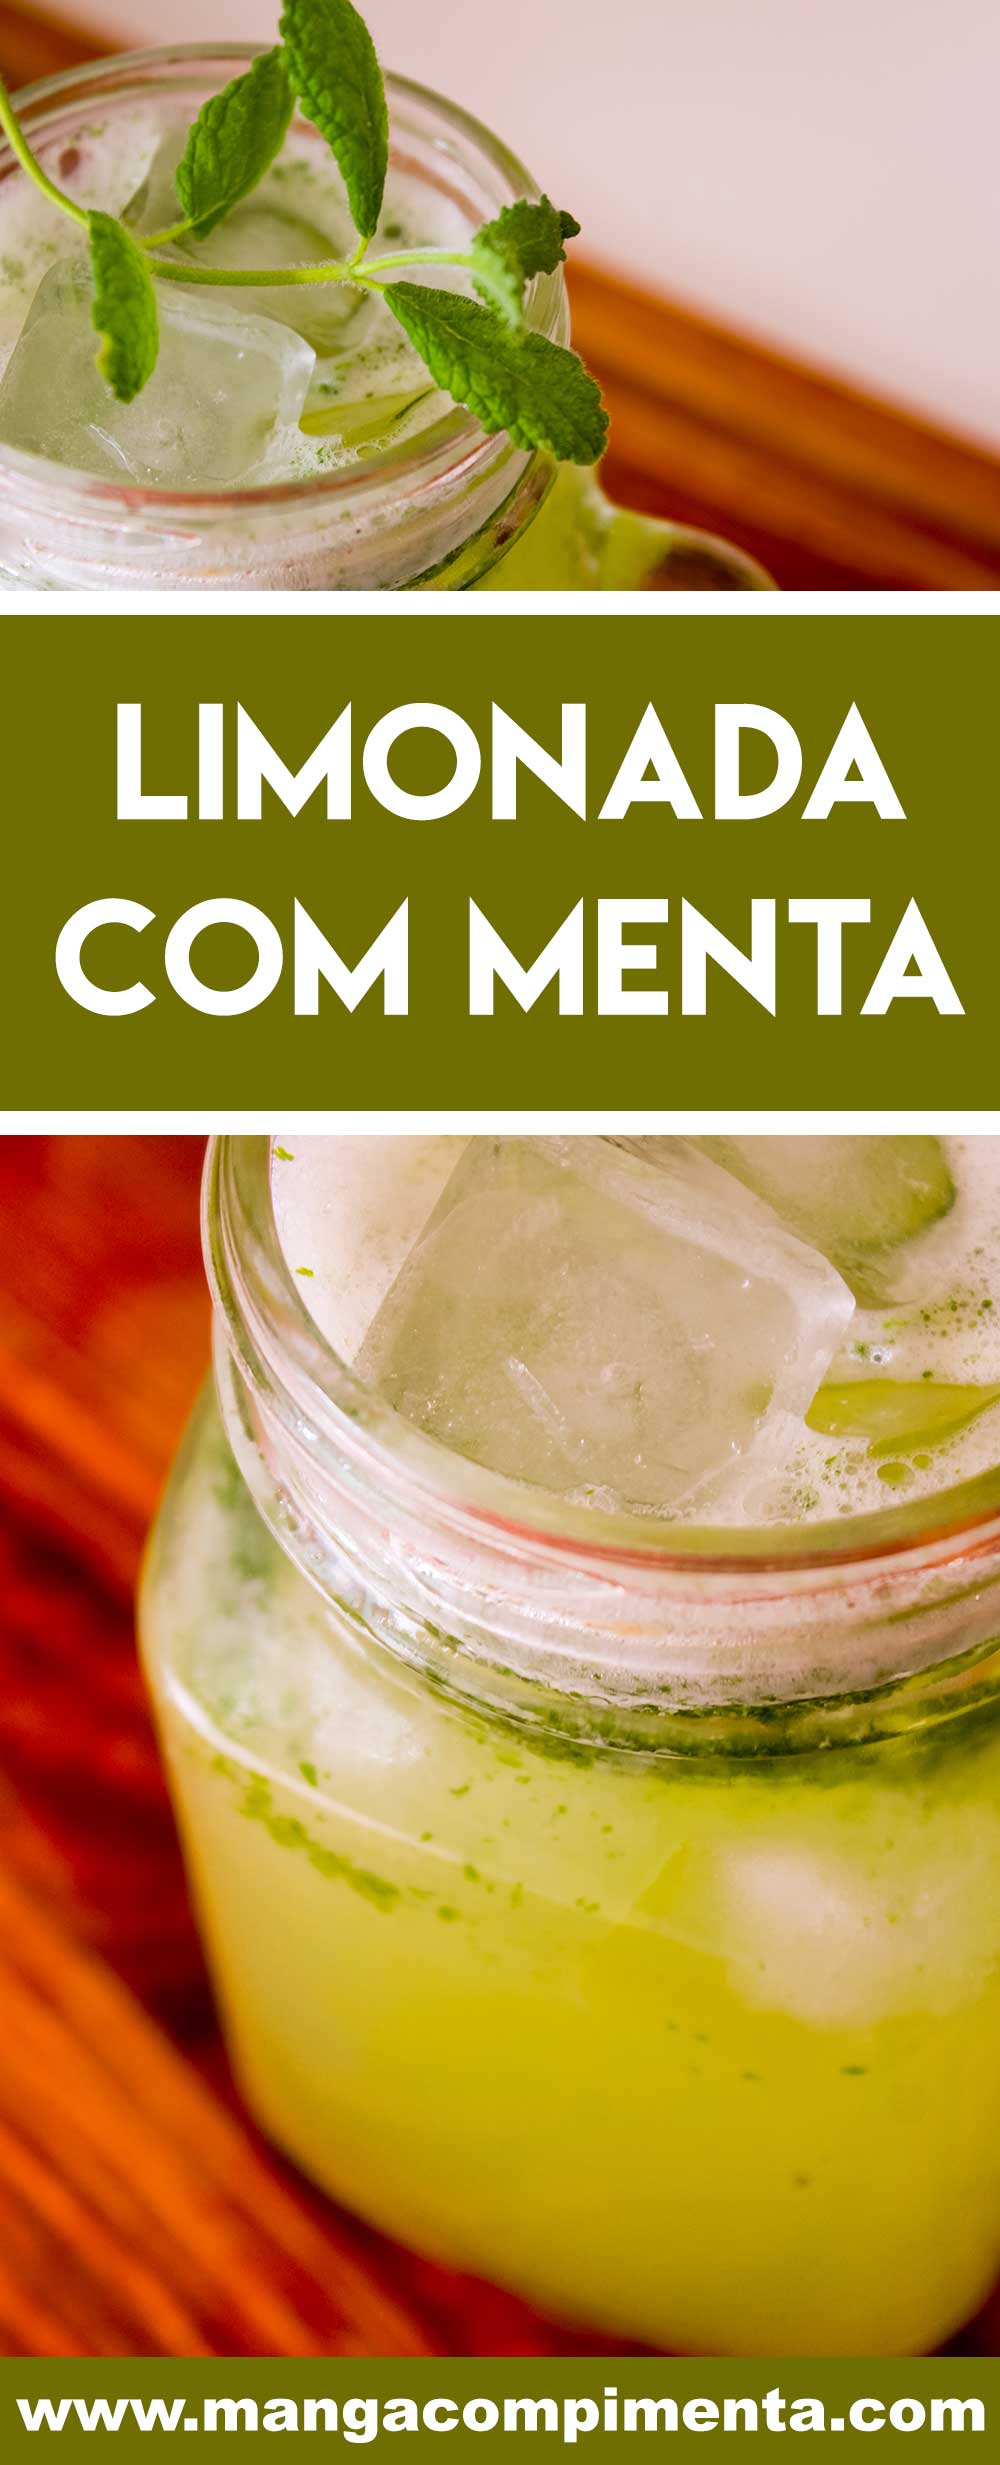 Receita de Limonada com Menta - prepare uma bebida refrescante neste verão.